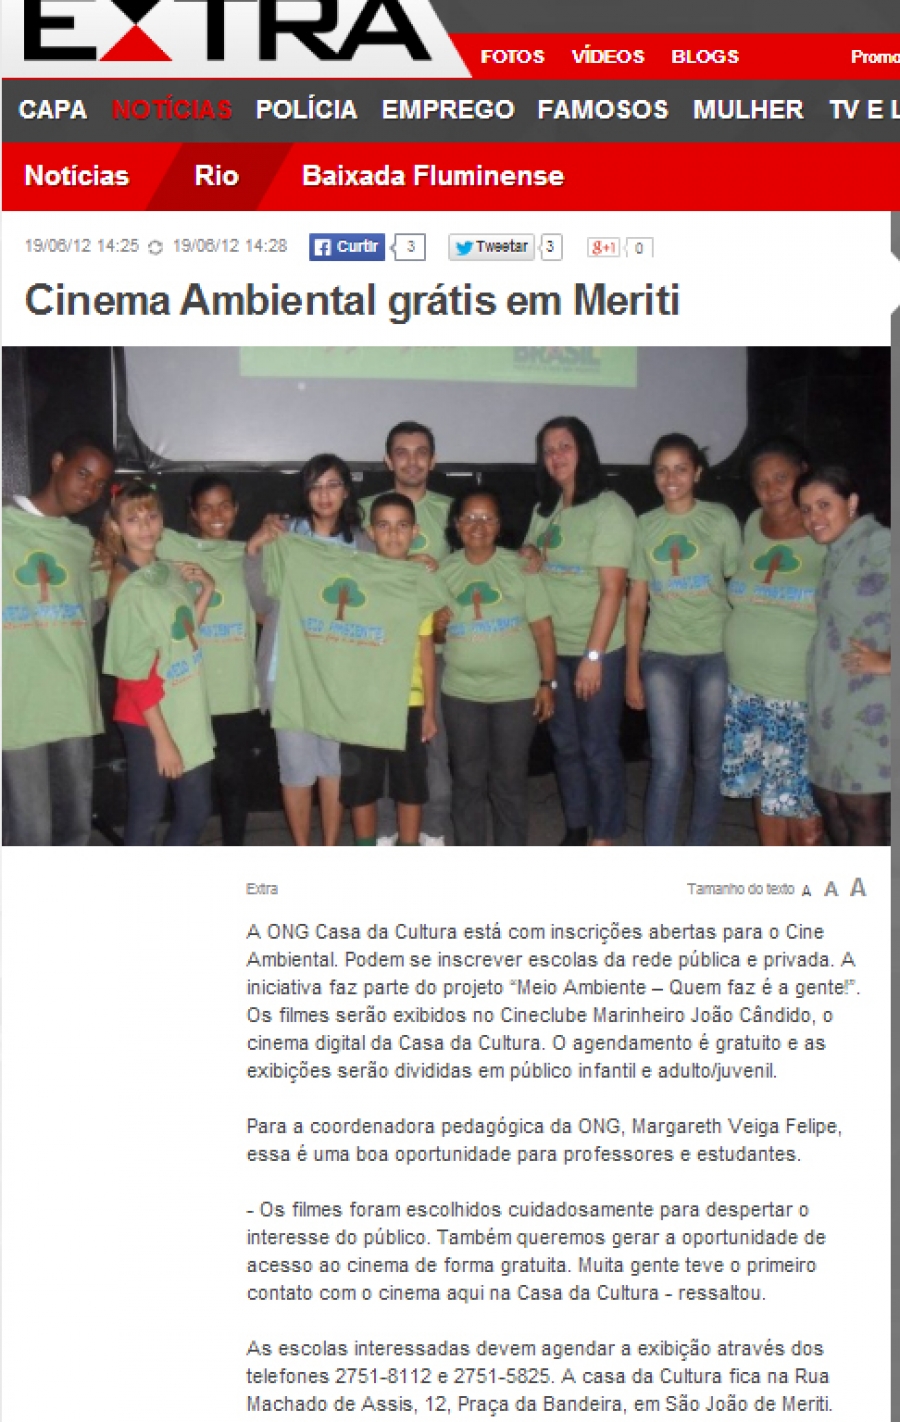 Jornal Extra on line – Cinema Ambiental Gratis em Meriti